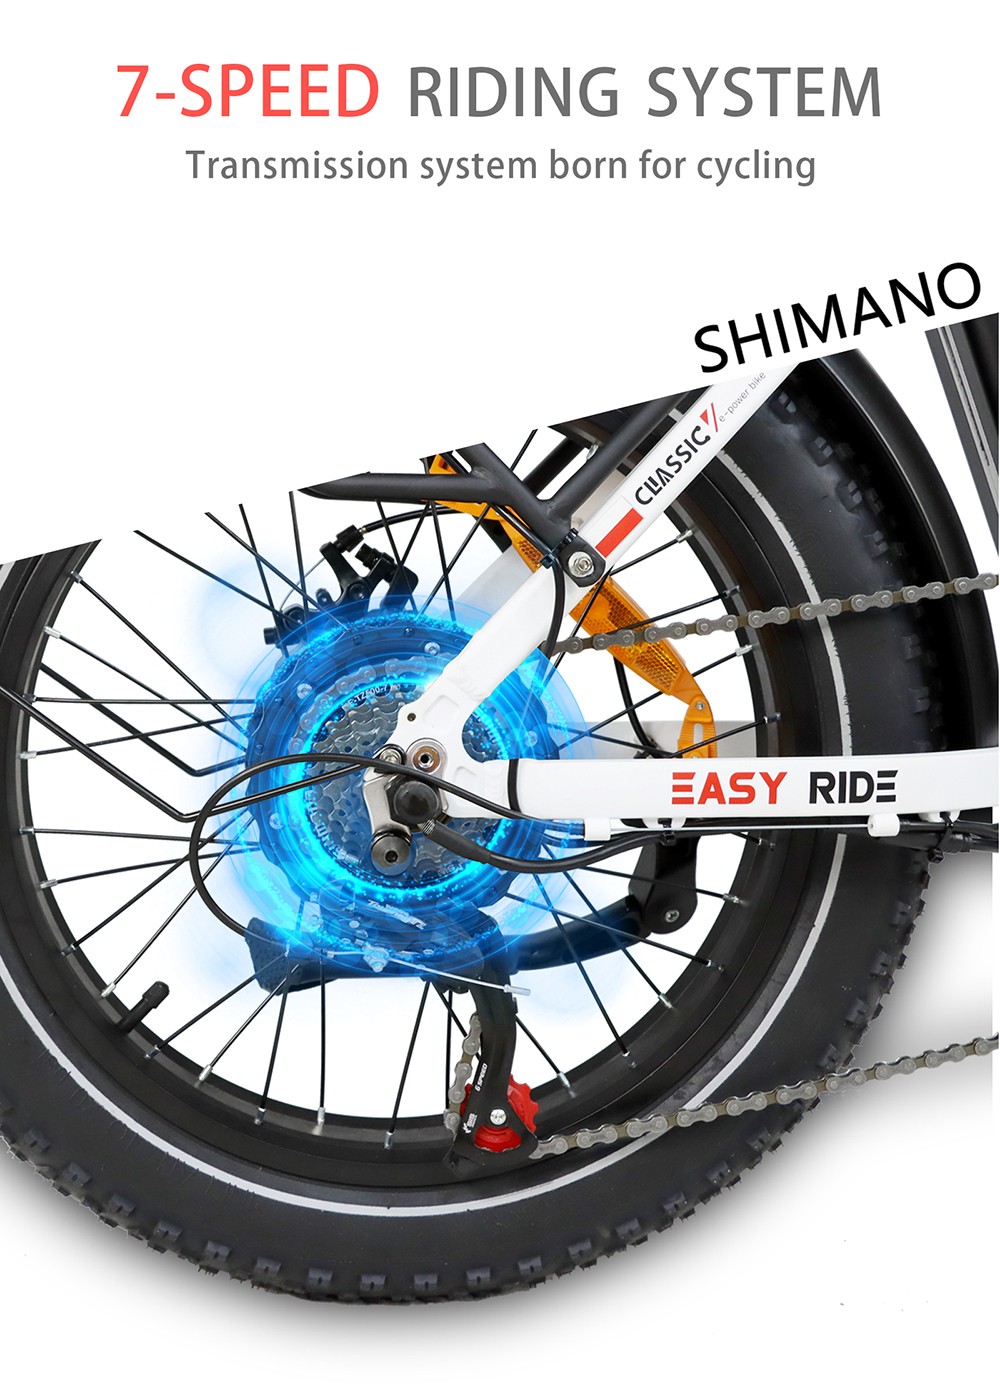 Vélo électrique BAOLUJIE DZ2030, pneu 20 * 4.0 pouces, moteur 500 W, batterie amovible 48 V 13 Ah, vitesse maximale 40 km/h, portée 35-45 km SHIMANO 7 vitesses - Noir